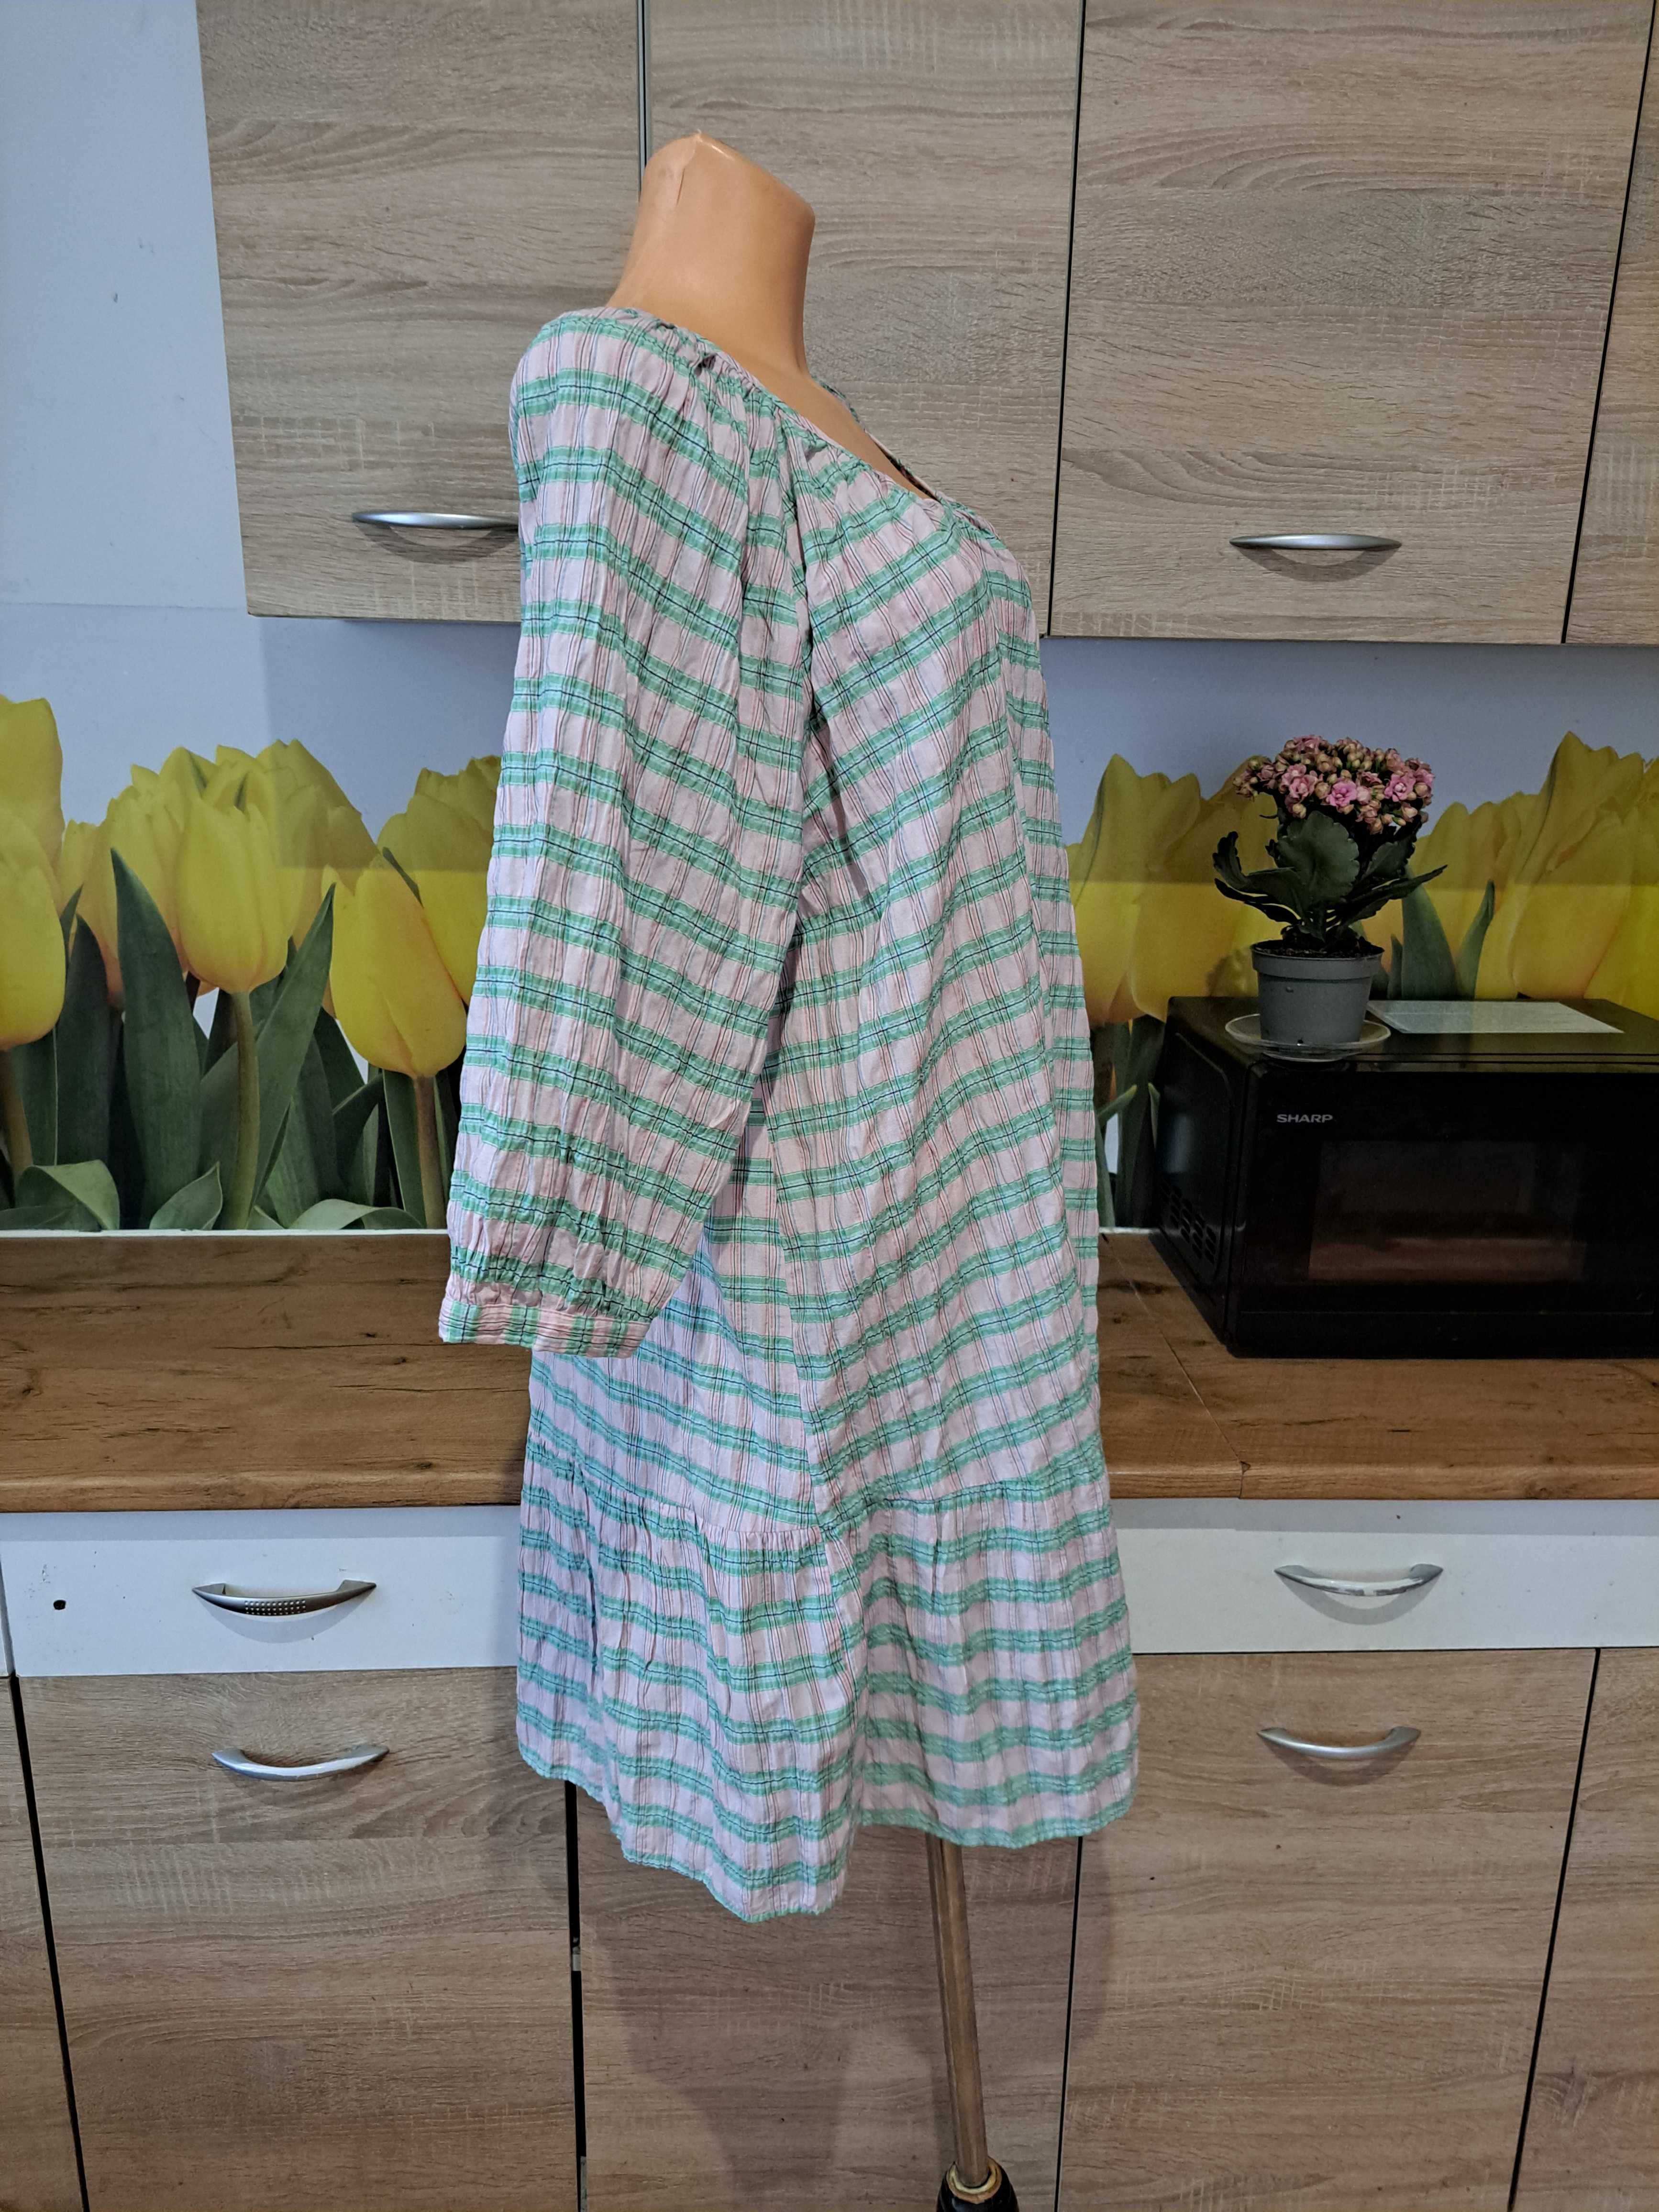 Śliczna słodka sukienka Primark rozmiar 44 bawełna/poliester, kratka